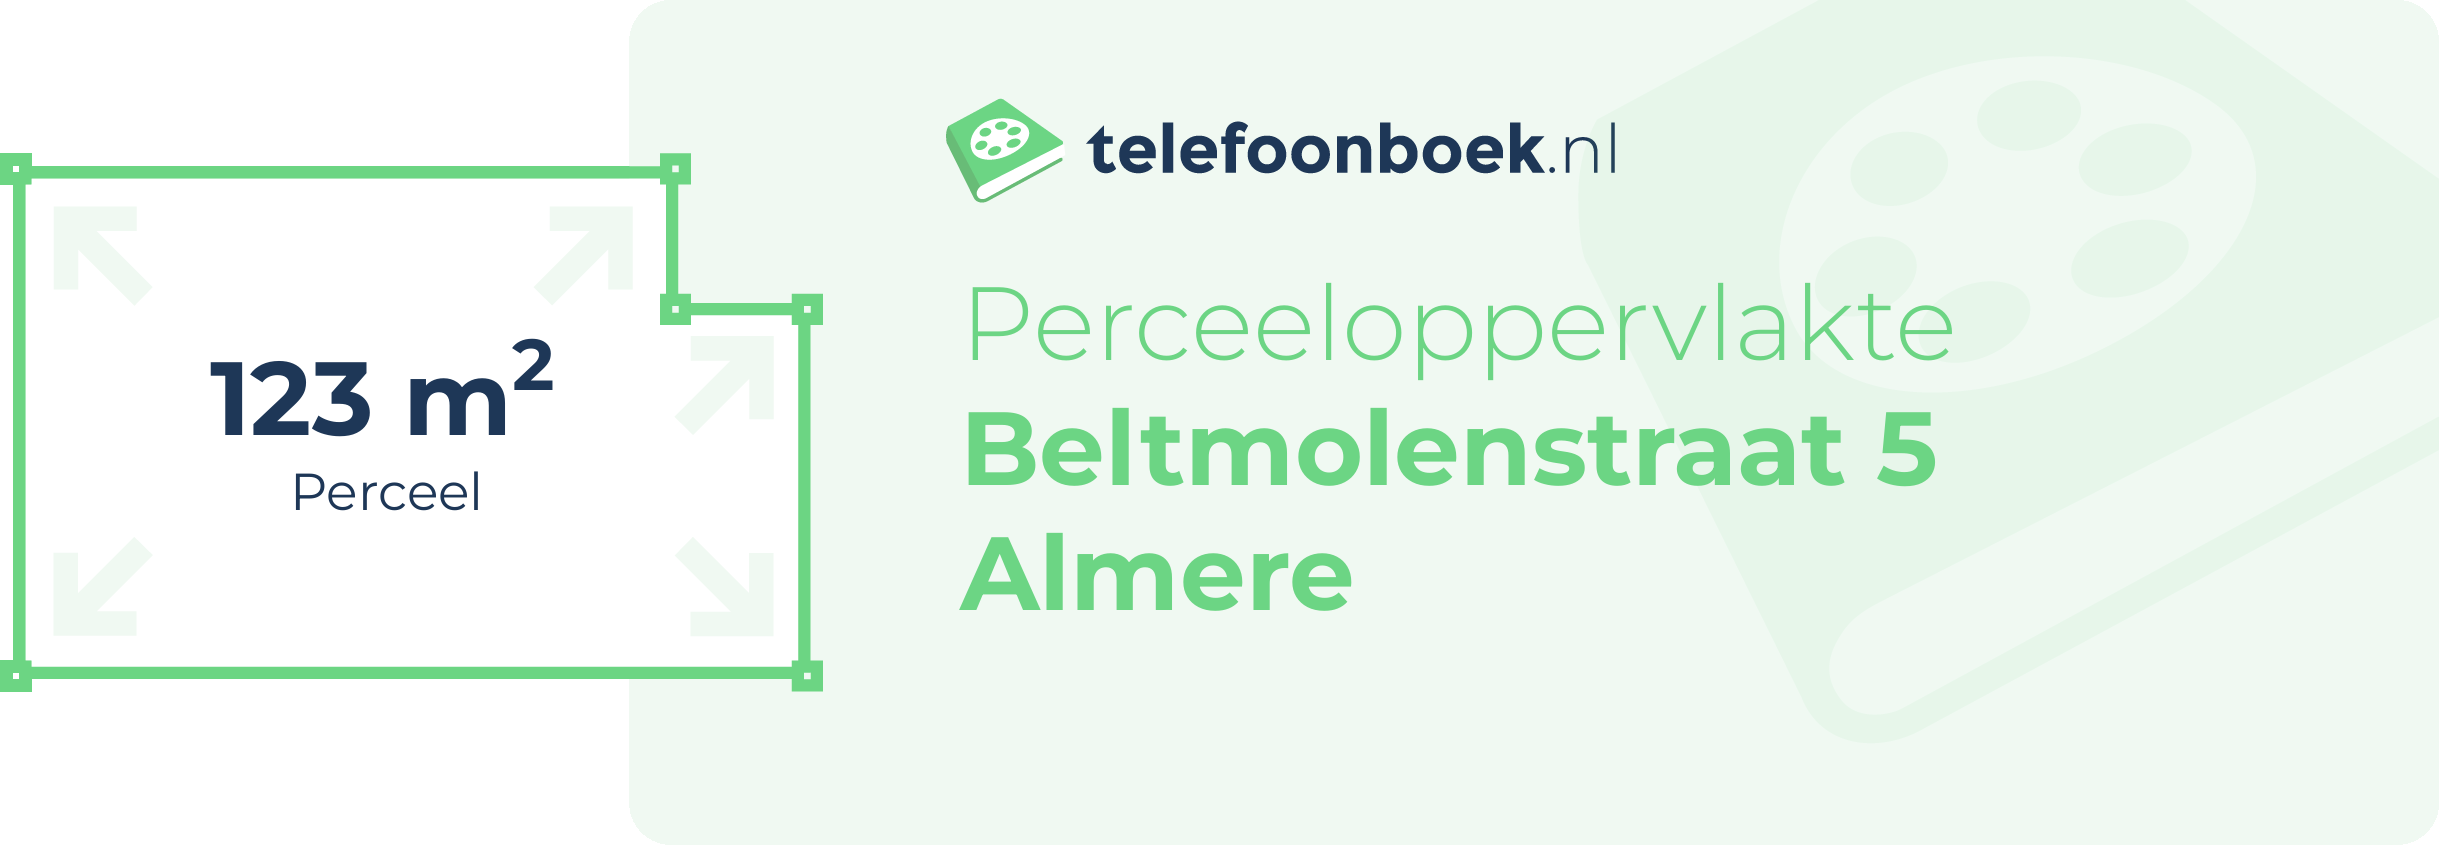 Perceeloppervlakte Beltmolenstraat 5 Almere